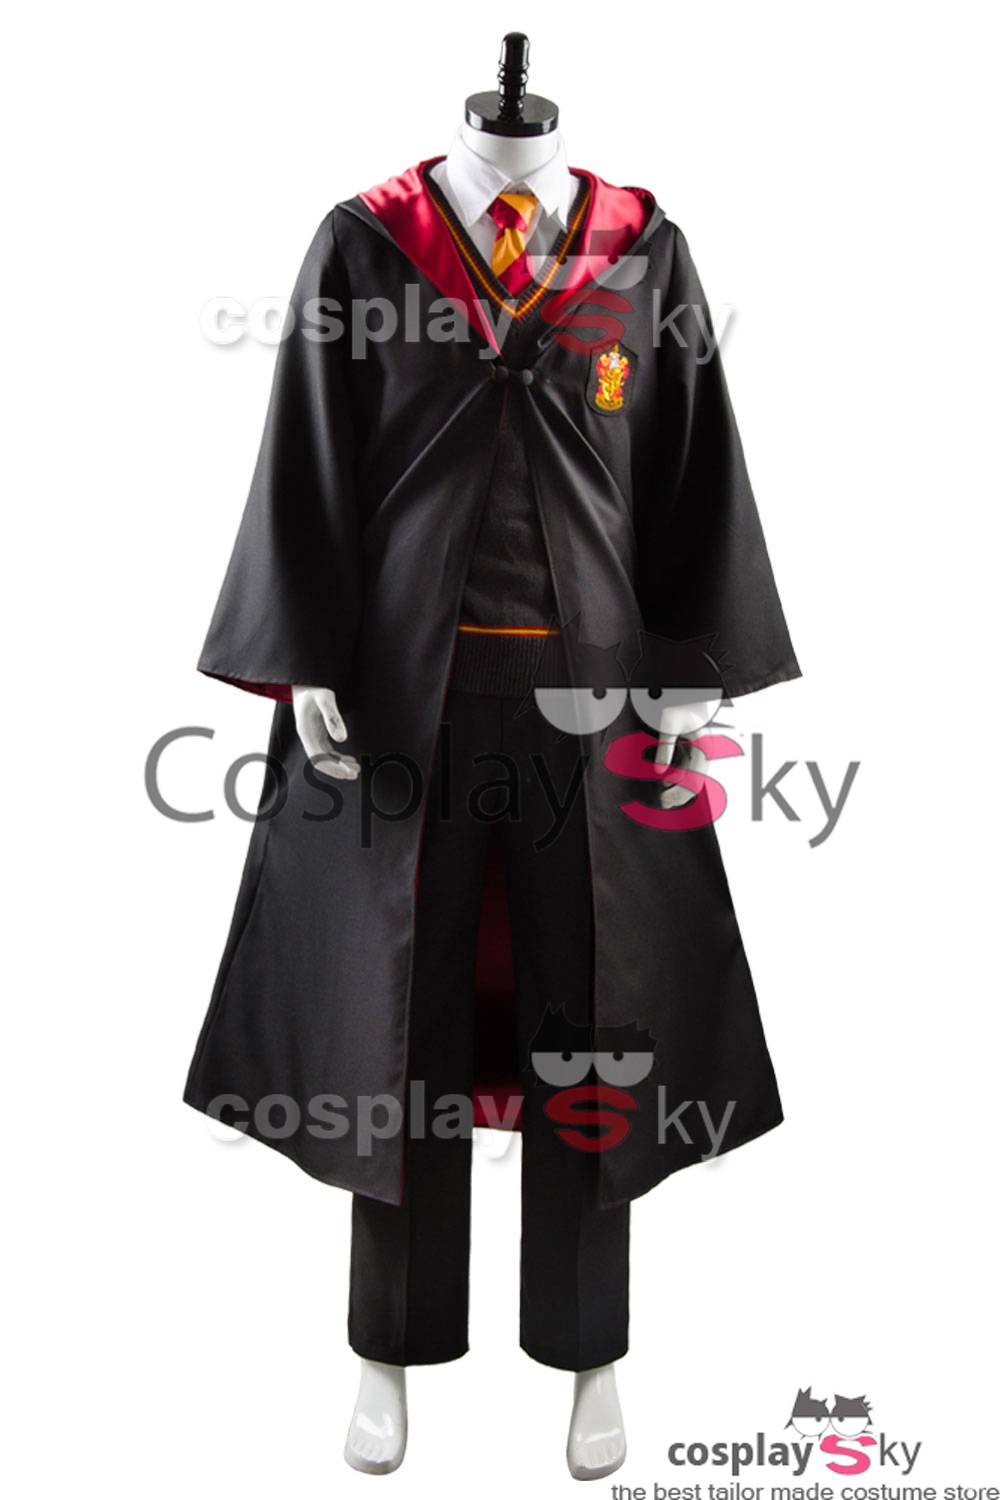 Harry Potter Gryffindor Robe Uniform Harry Potter Cosplay Kostüm Erwachsene Ver.